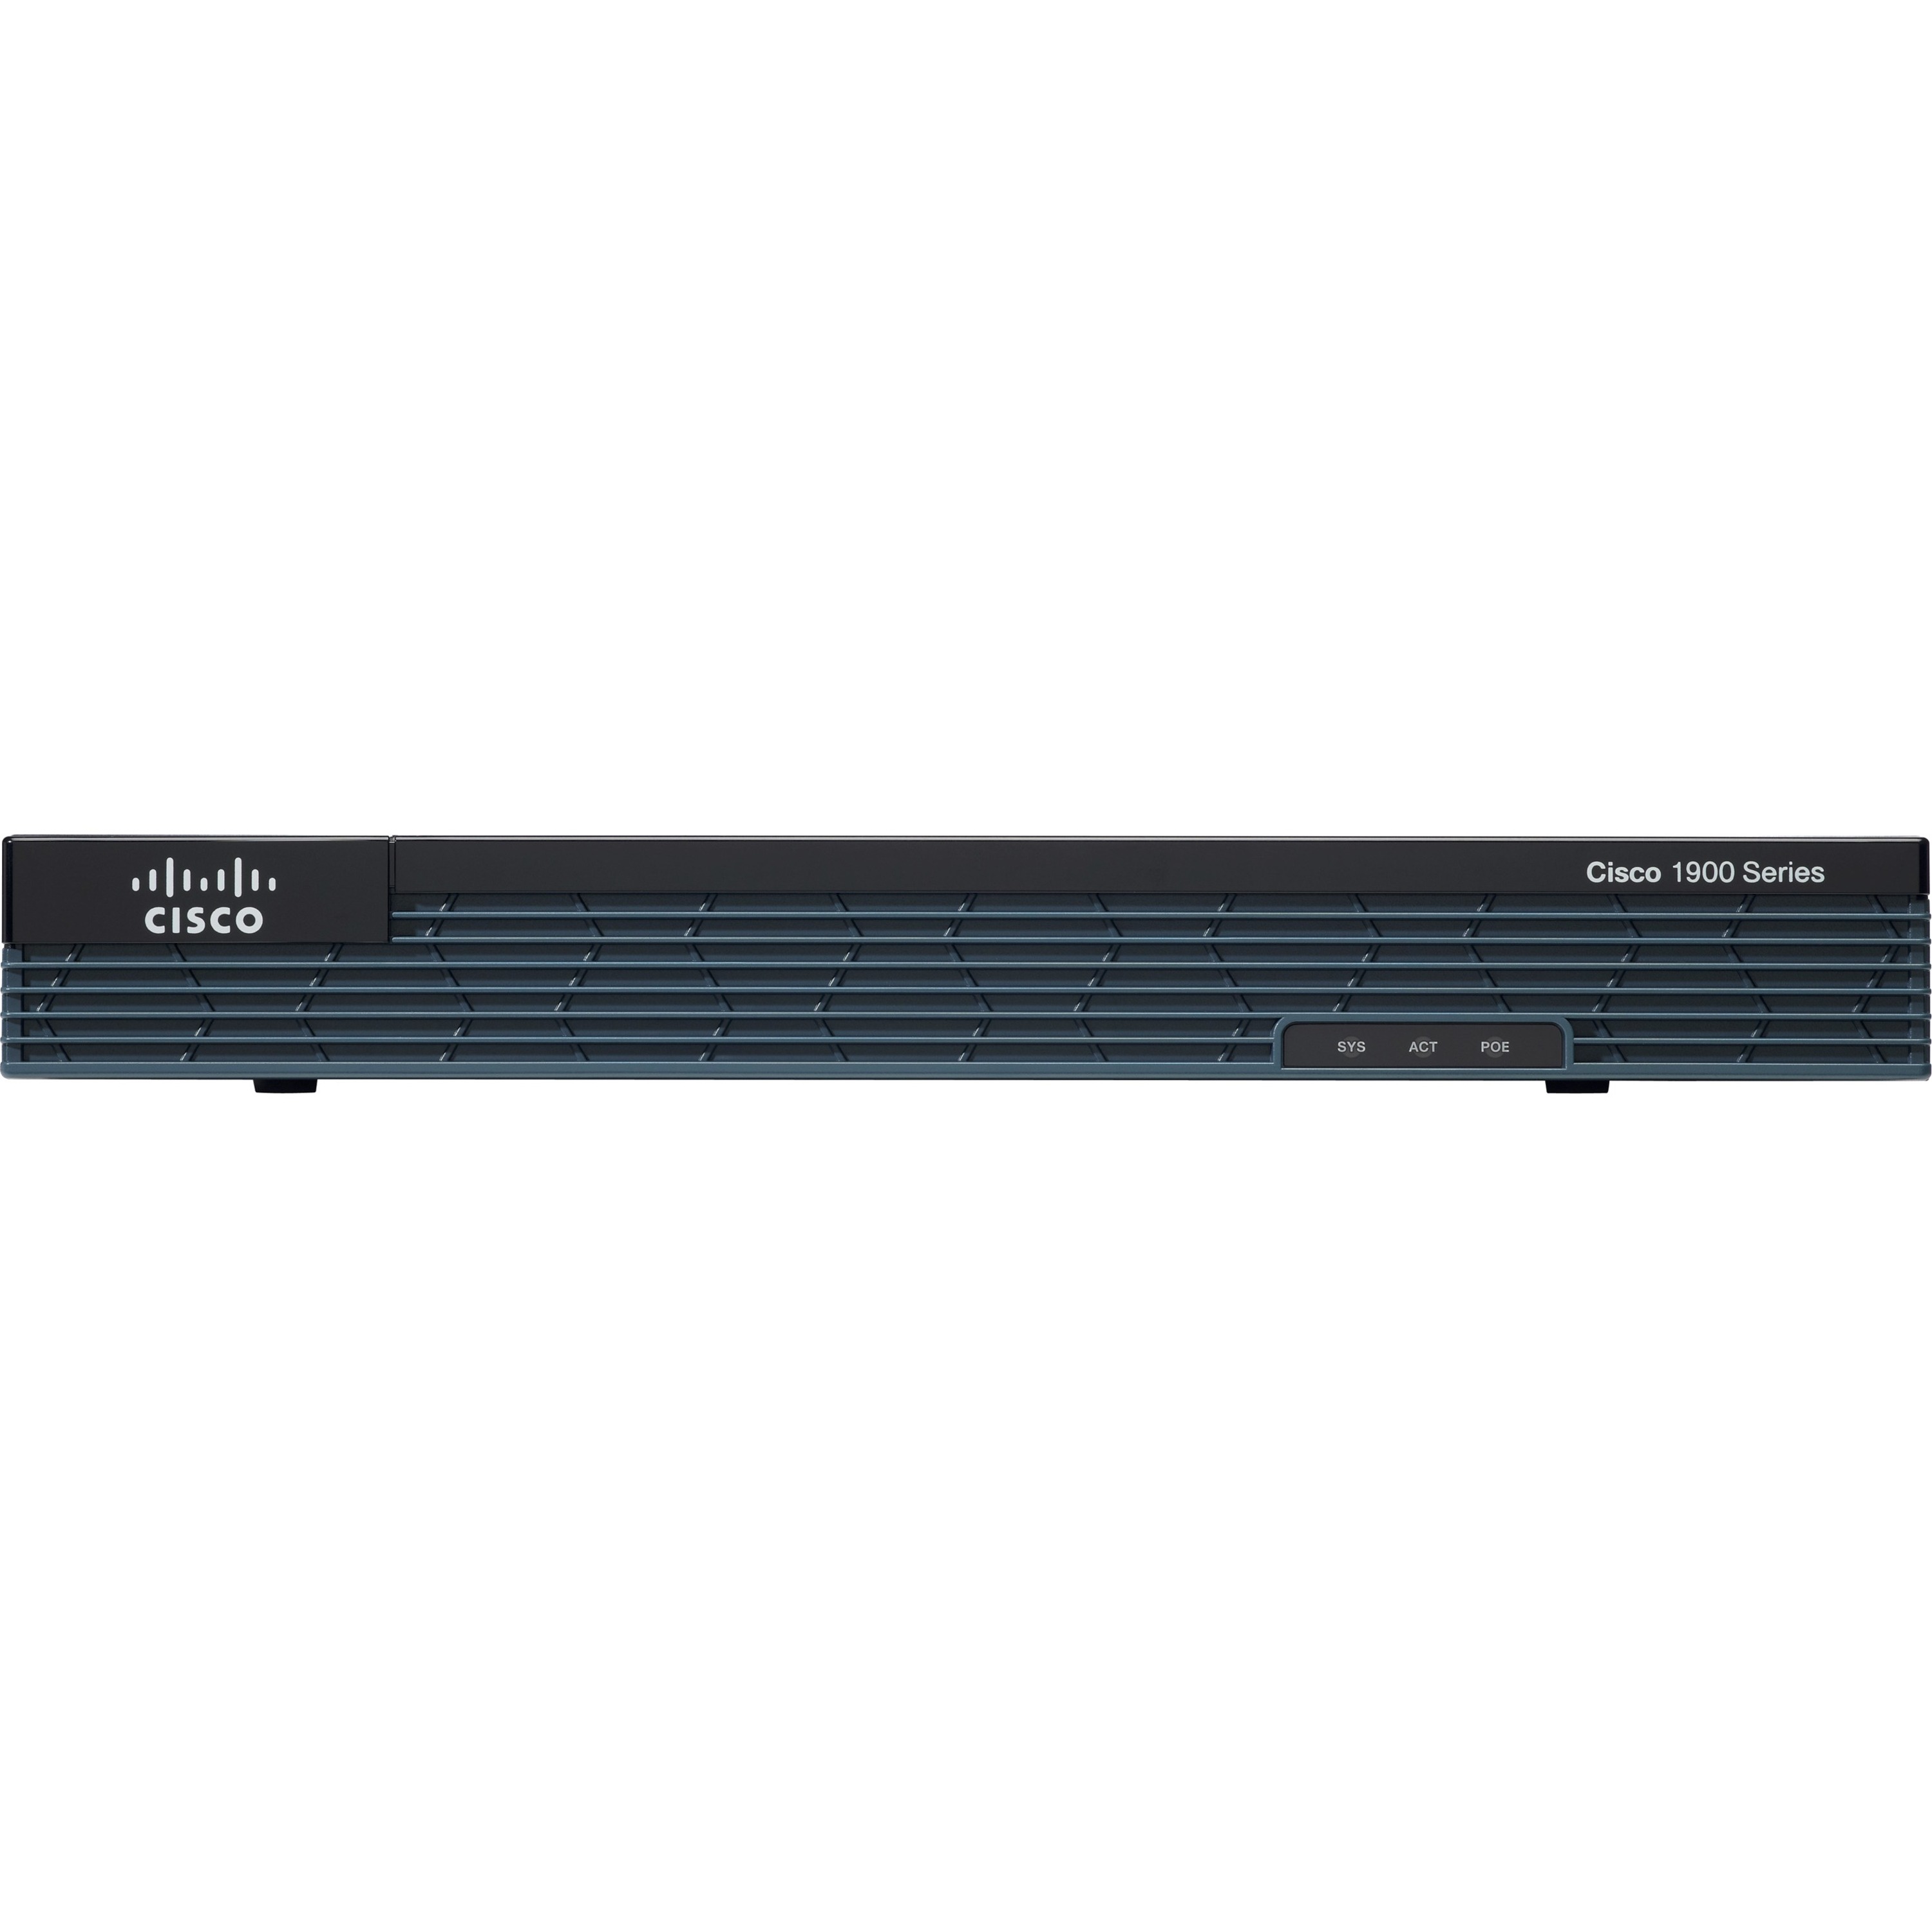 Cisco 3825 Security Router 15.1 IOS CISCO3825-HSEC/K9-1 Year Warranty